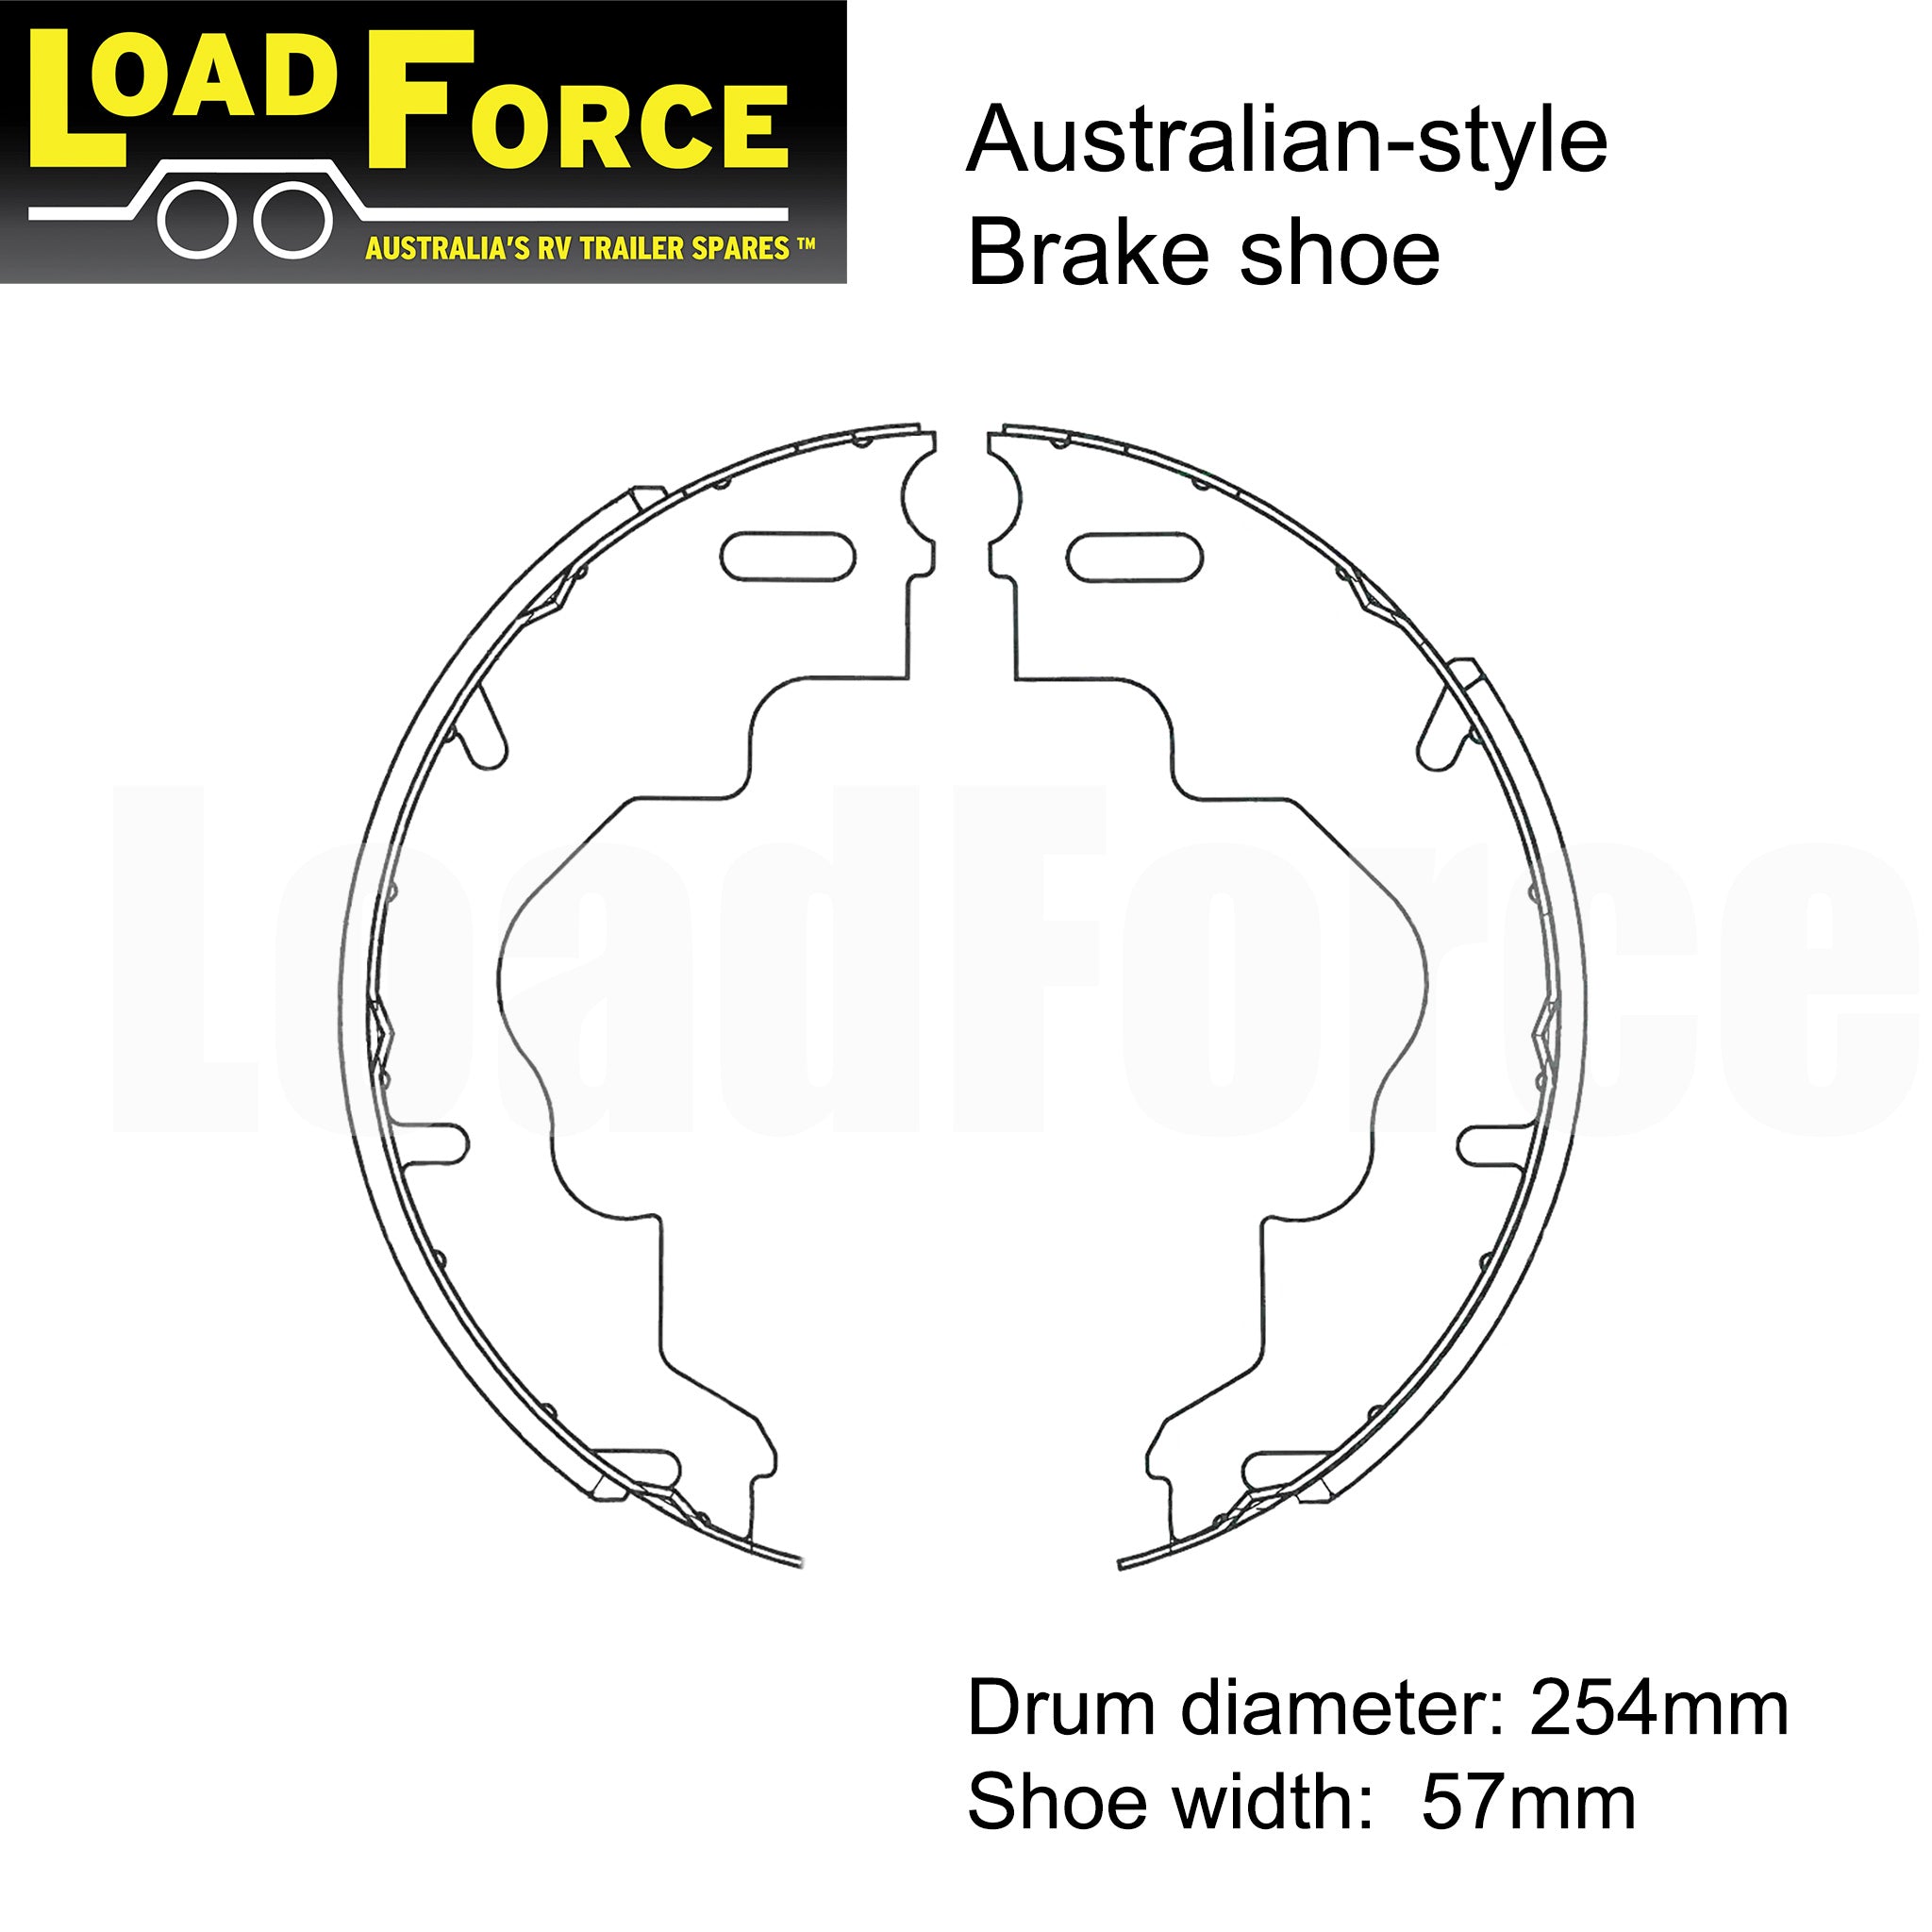 LoadForce 10 x 2.25 inch standard Australian electric brake shoe set of 4